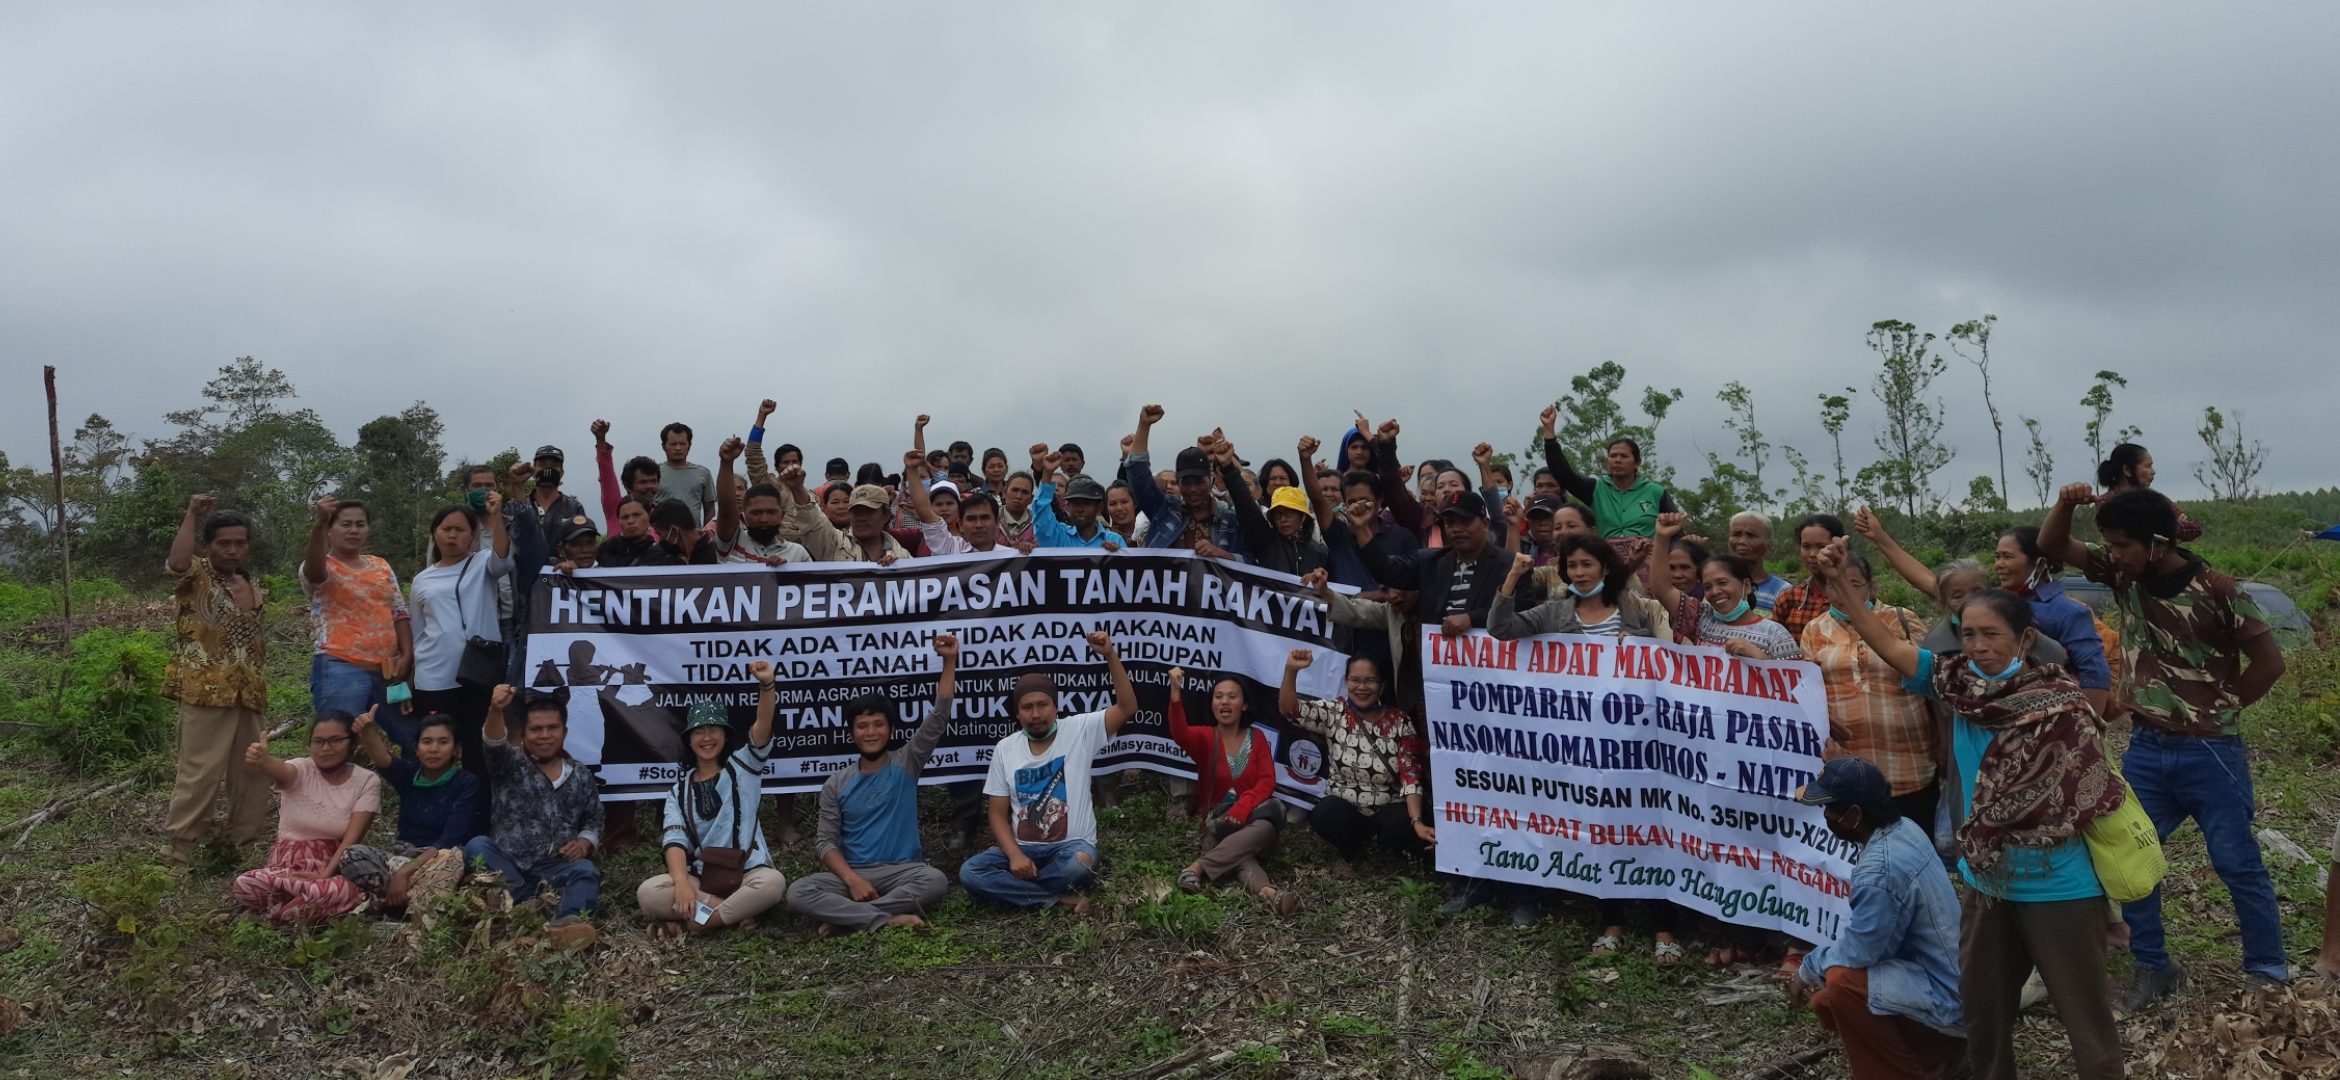 Serikat Tani Mendukung Gerakan Masyarakat Adat Pomparan Op. Raja Nasomalo Marhohos, Natinggir